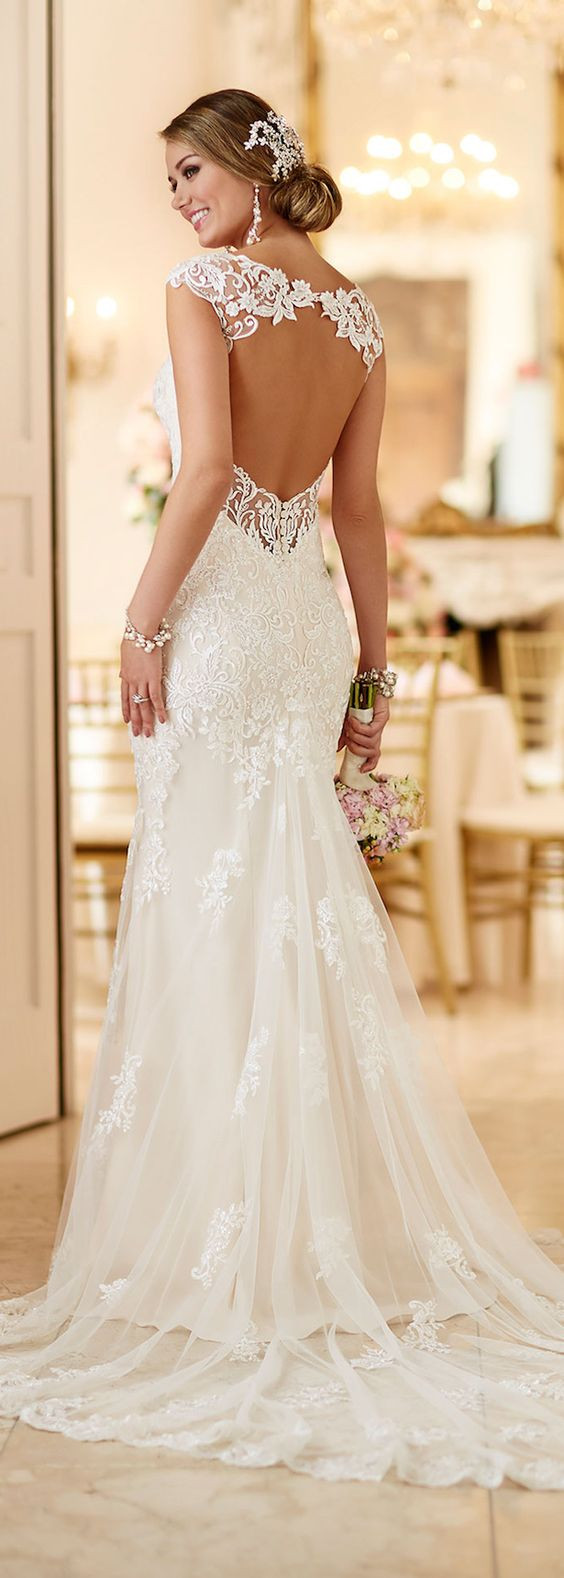 Lace Wedding Dress Pinterest
 Los 15 vestidos de novias más vistos en Pinterest KENA